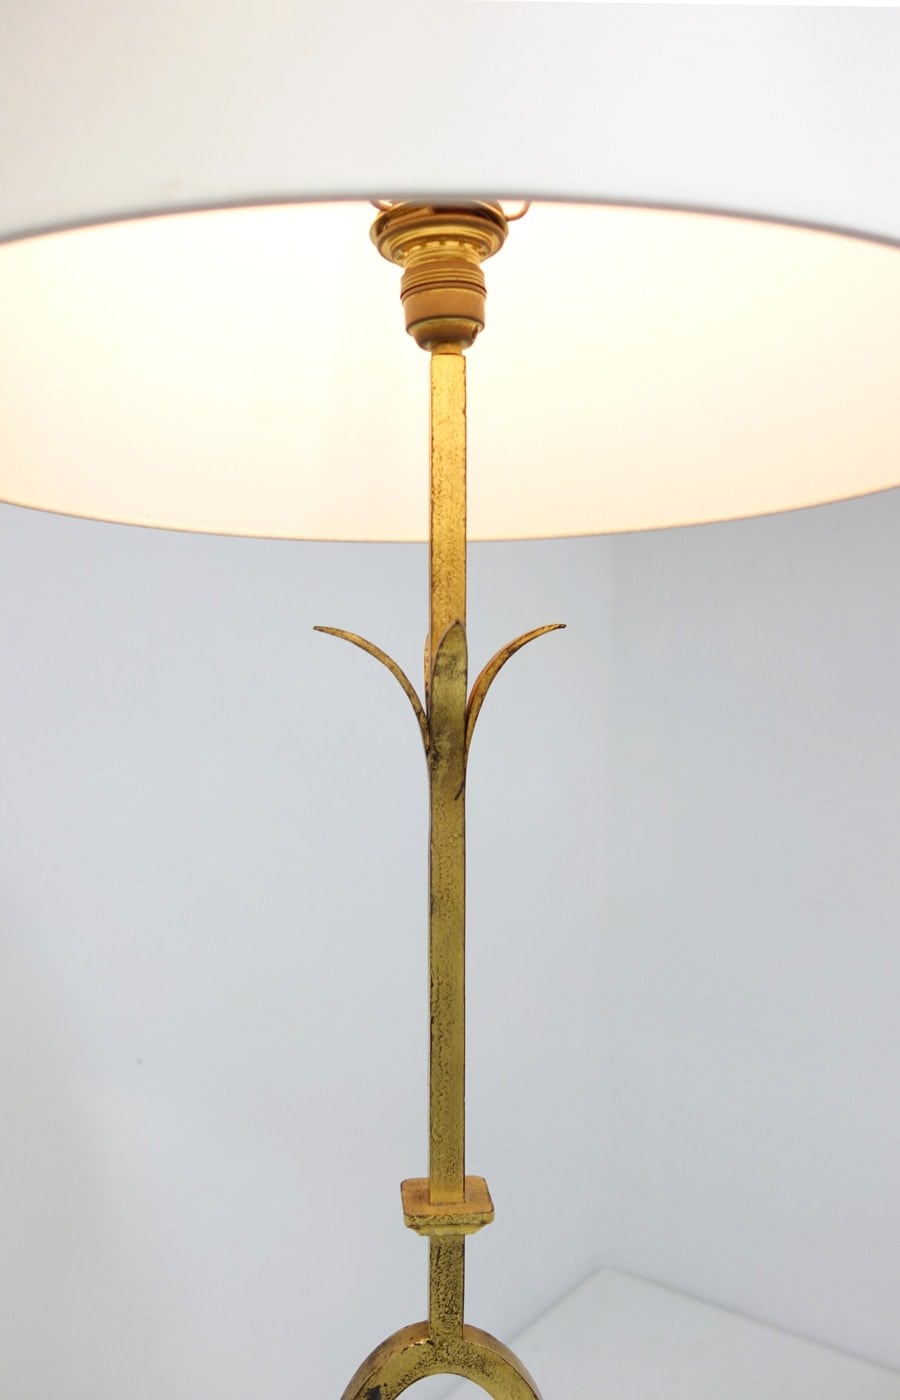 Gilbert Poillerat, Gilt wrought iron floor lamp, vue 03